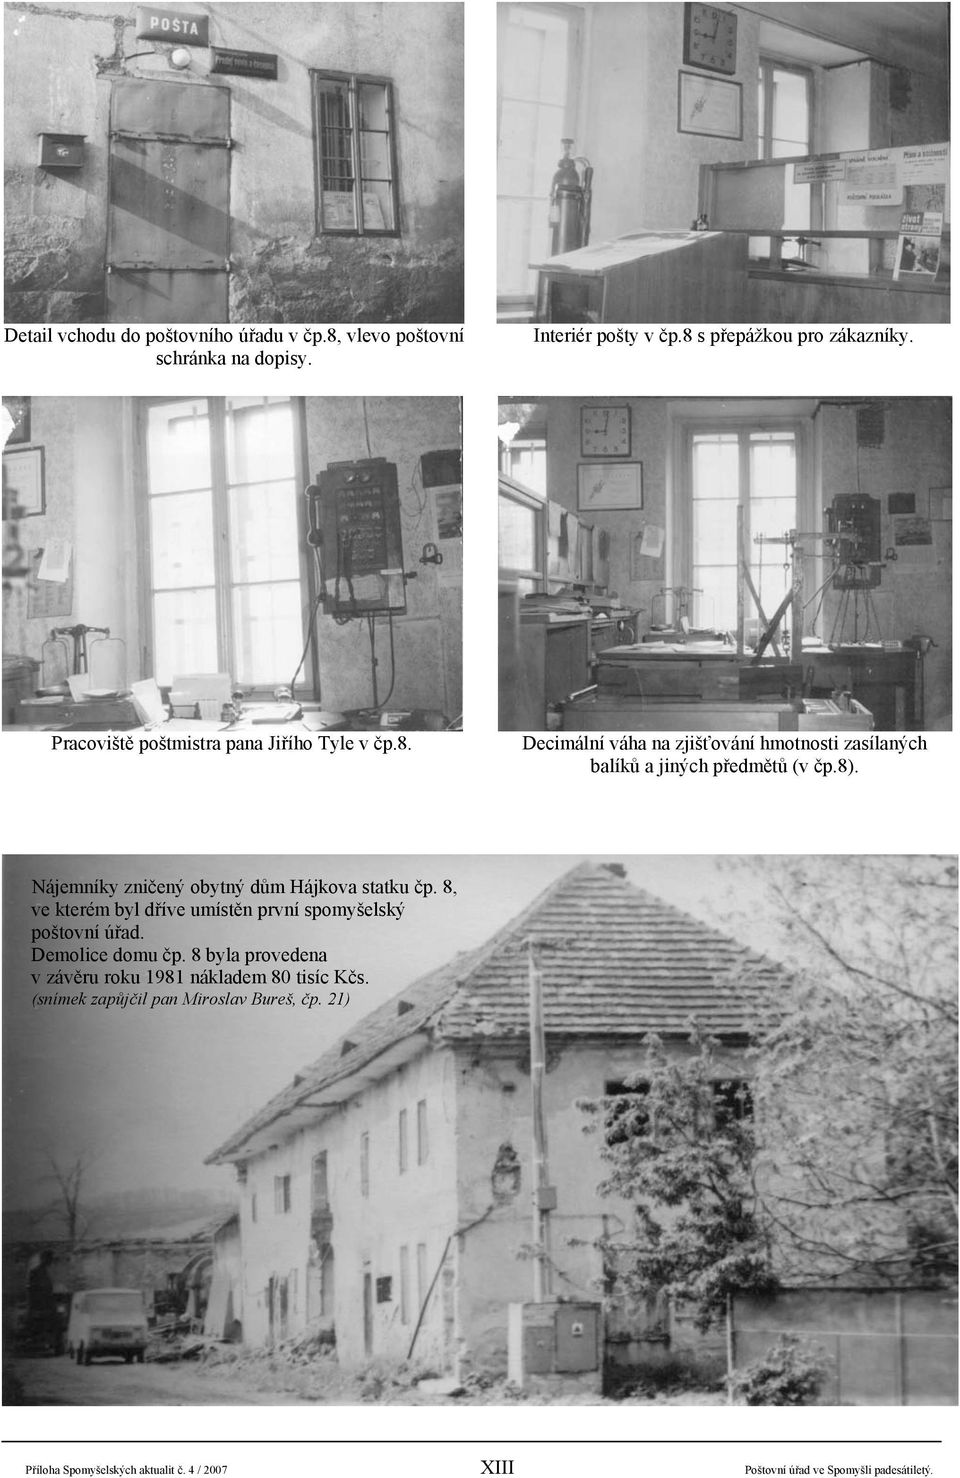 Nájemníky zničený obytný dům Hájkova statku čp. 8, ve kterém byl dříve umístěn první spomyšelský poštovní úřad. Demolice domu čp.